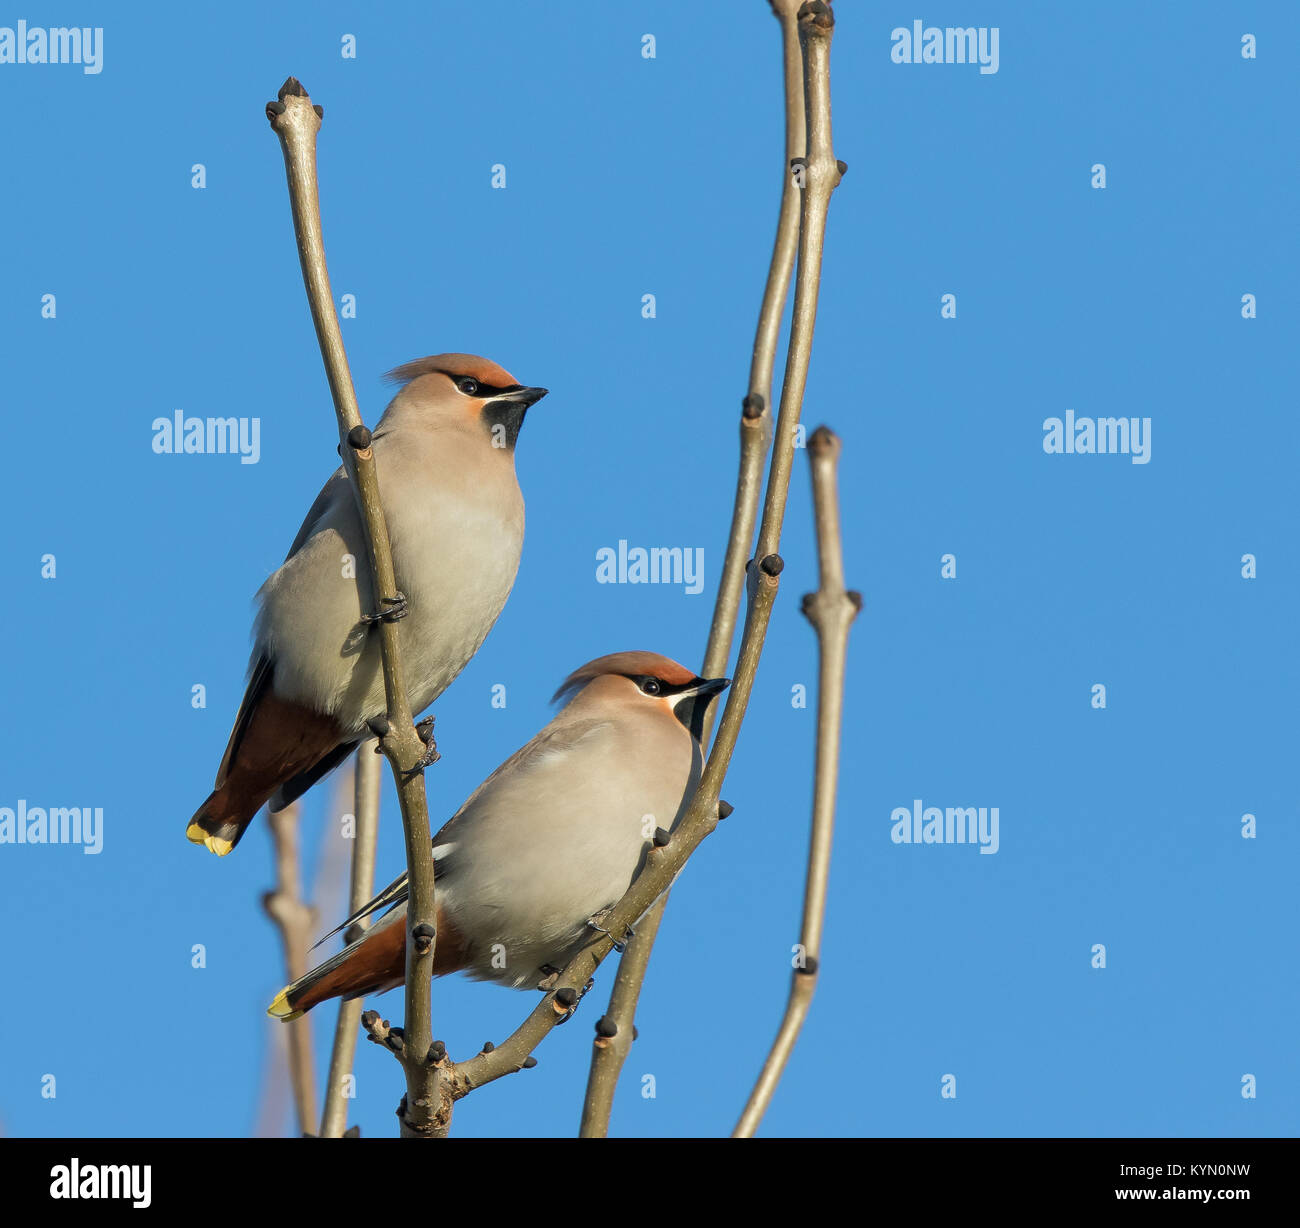 A basso angolo di due uccelli di waxwing (Bombycilla garrulus) isolati all'aperto che perching in albero in luce solare invernale. Visitatori invernali del Regno Unito con ali di cera. Foto Stock